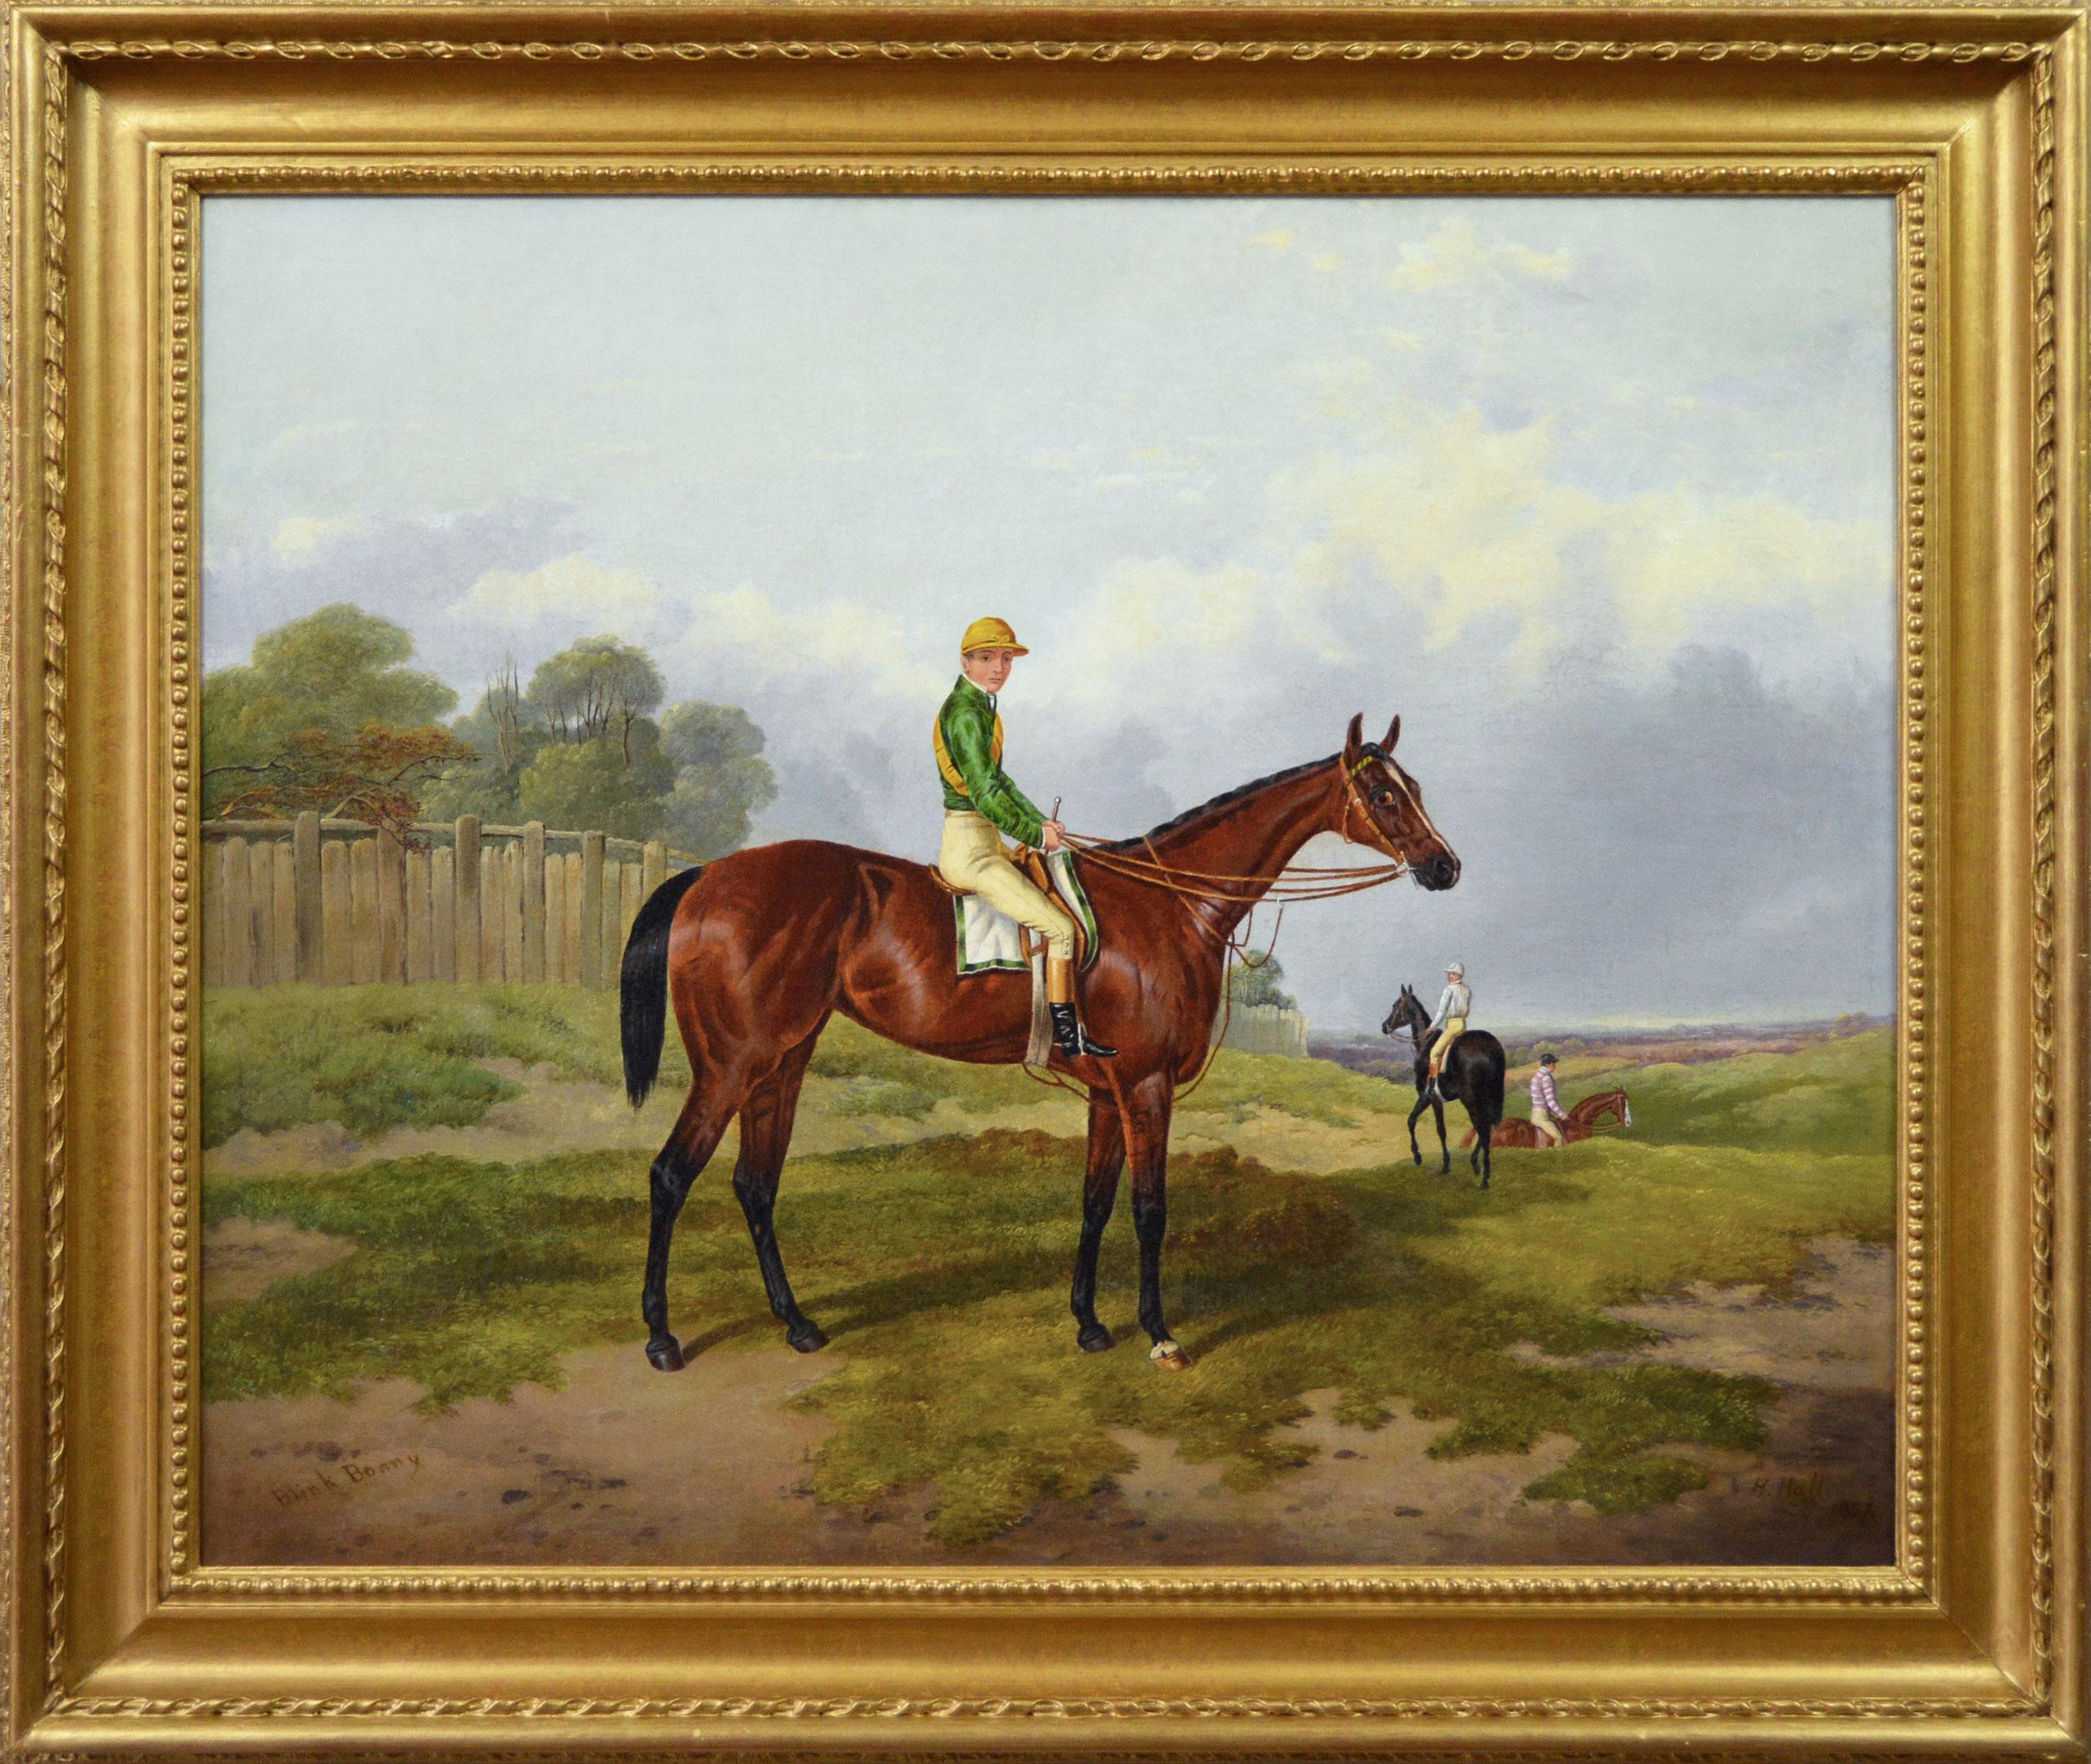 Animal Painting Harry Hall - Peinture à l'huile du 19e siècle représentant un cheval de course, Blink Bonny